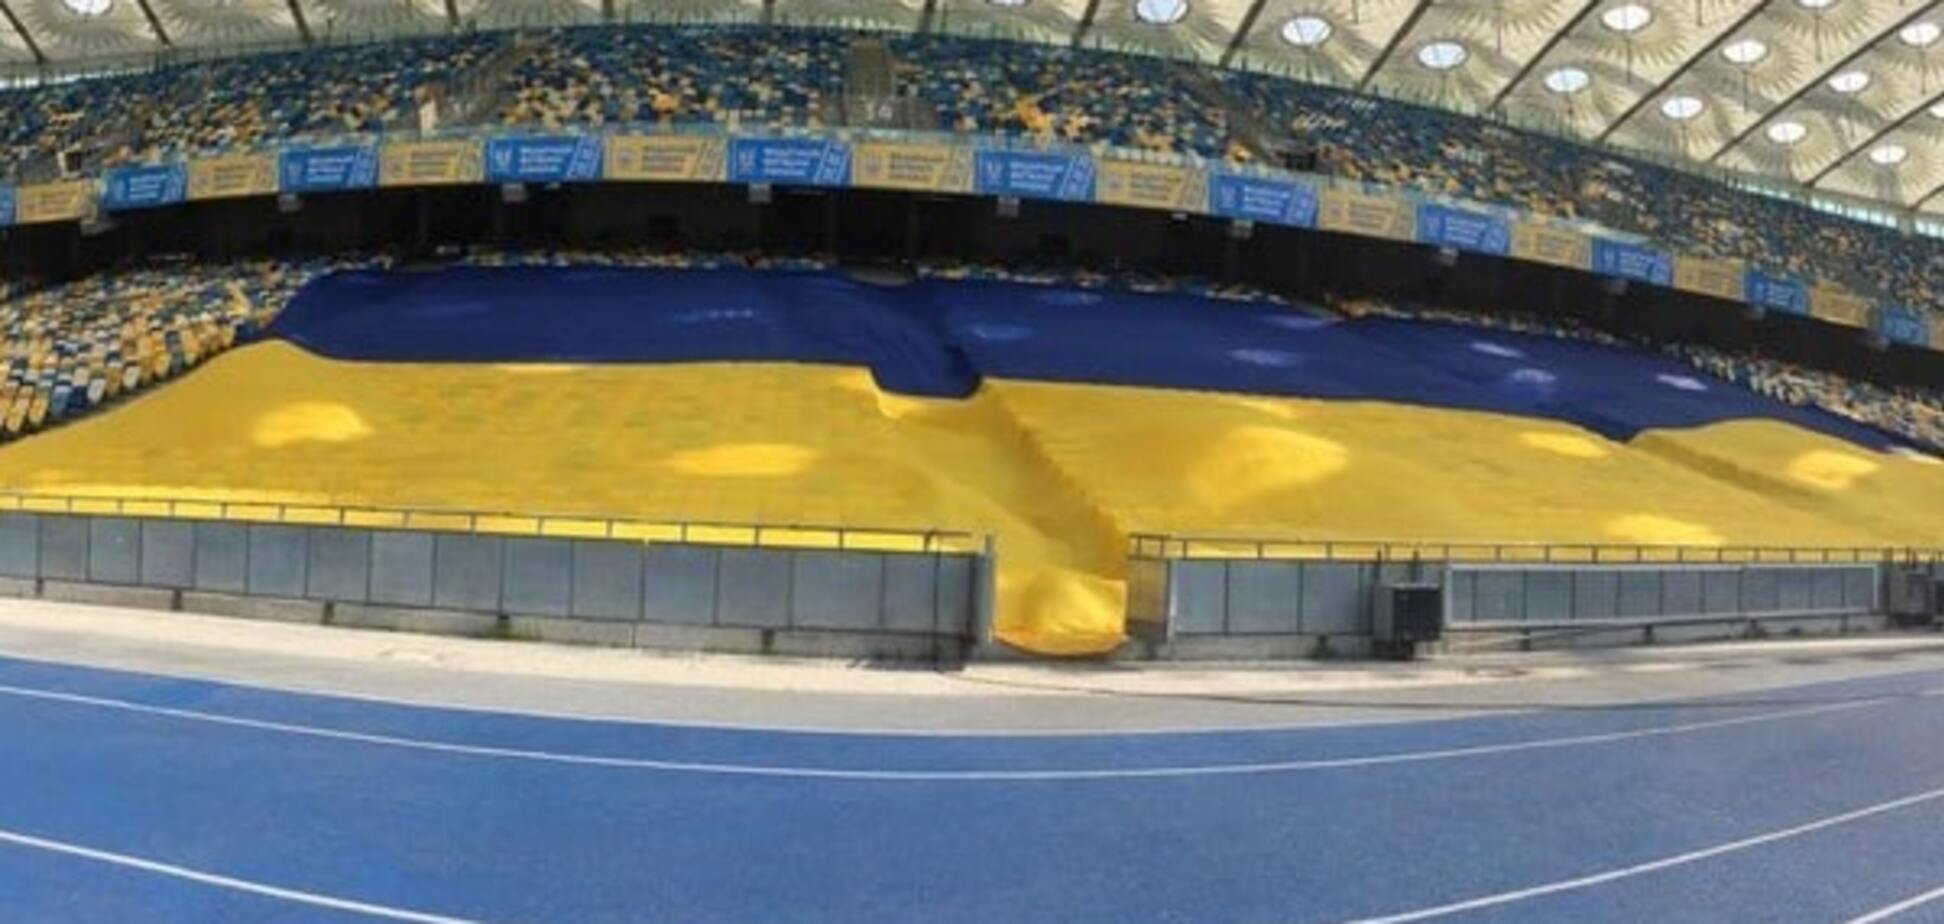 Найбільший у світі: збірній України придумали незвичайну підтримку на 'забаненому' 'Олімпійському'